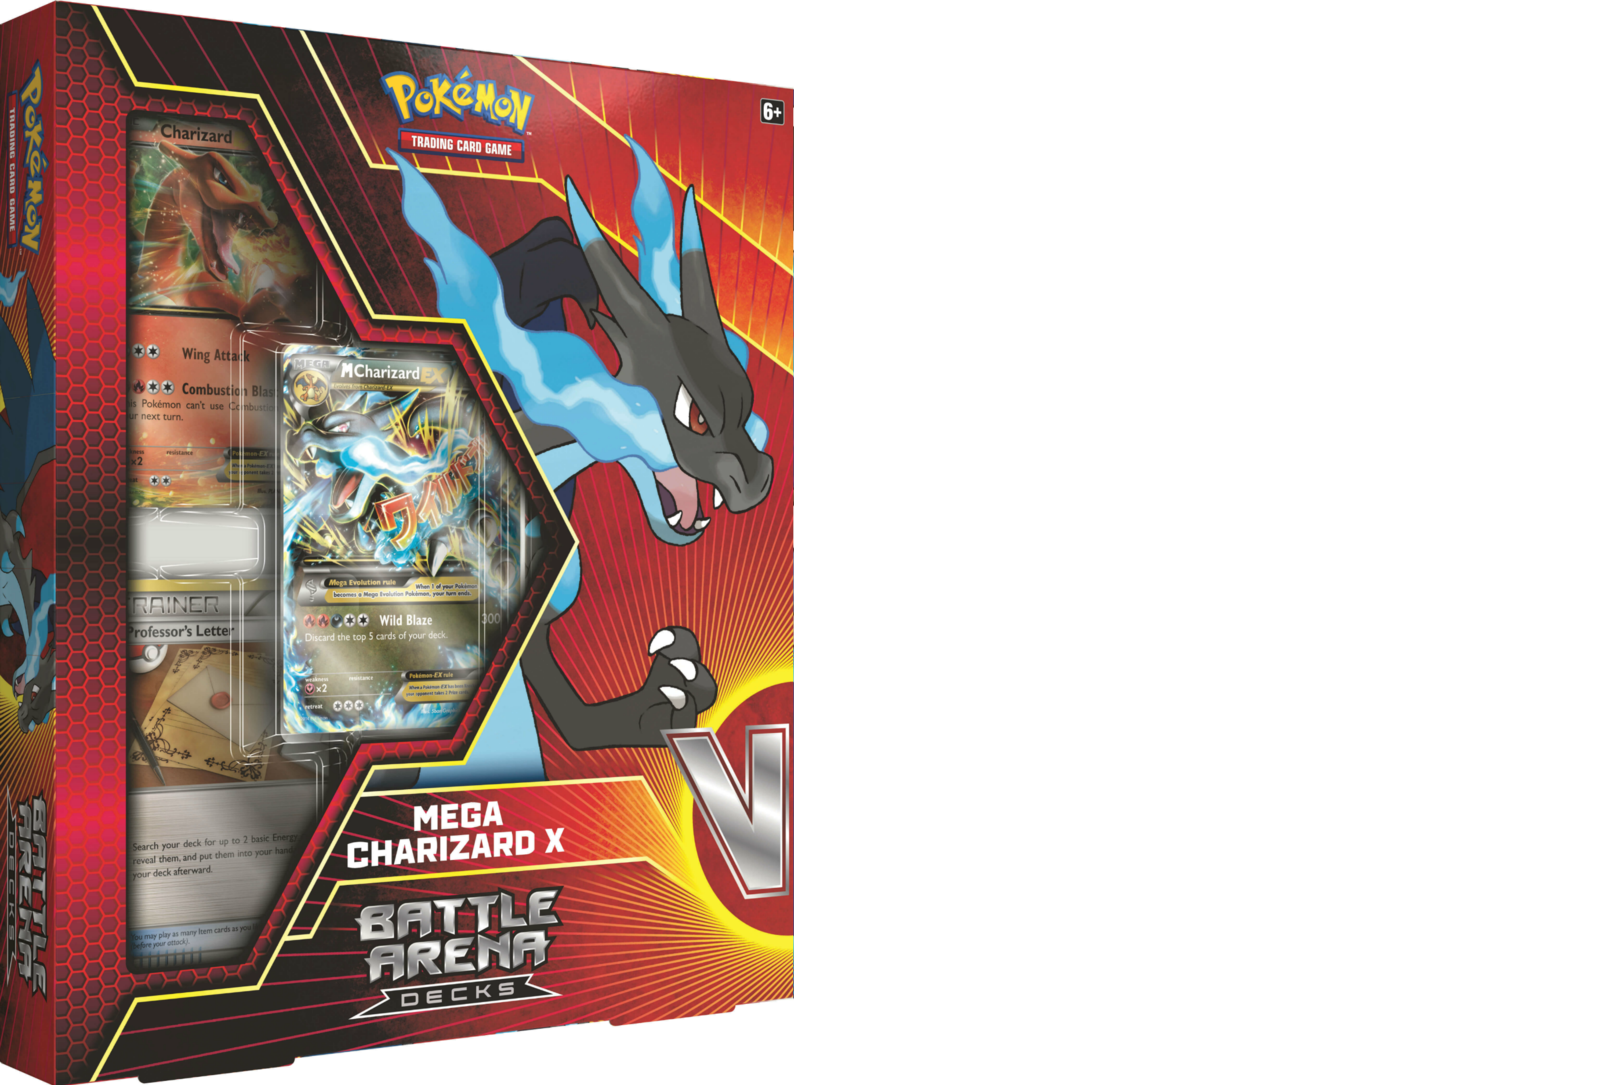 Pokémon TCG: Battle Arena Deck Mega Charizard X 